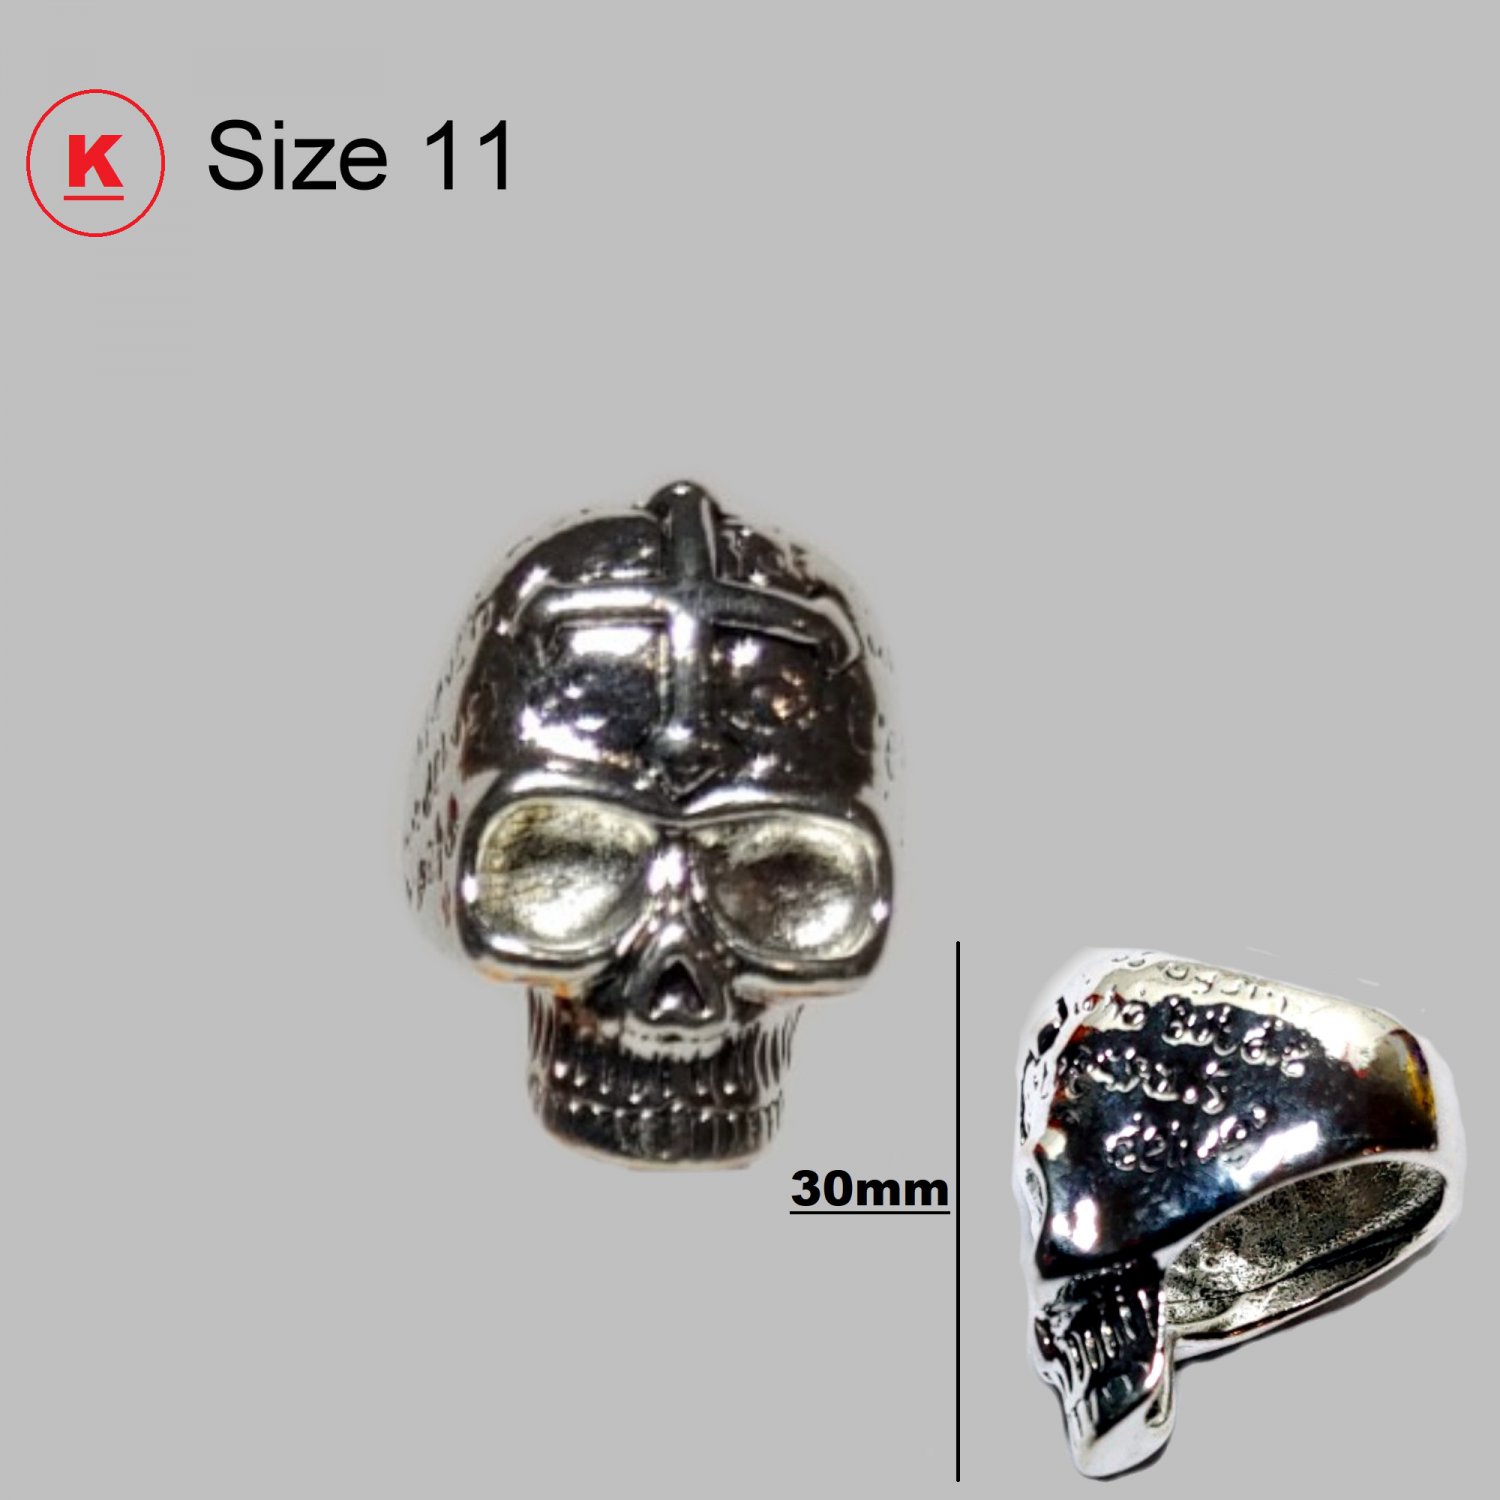 Stainless Steel Skull Ring Size 11